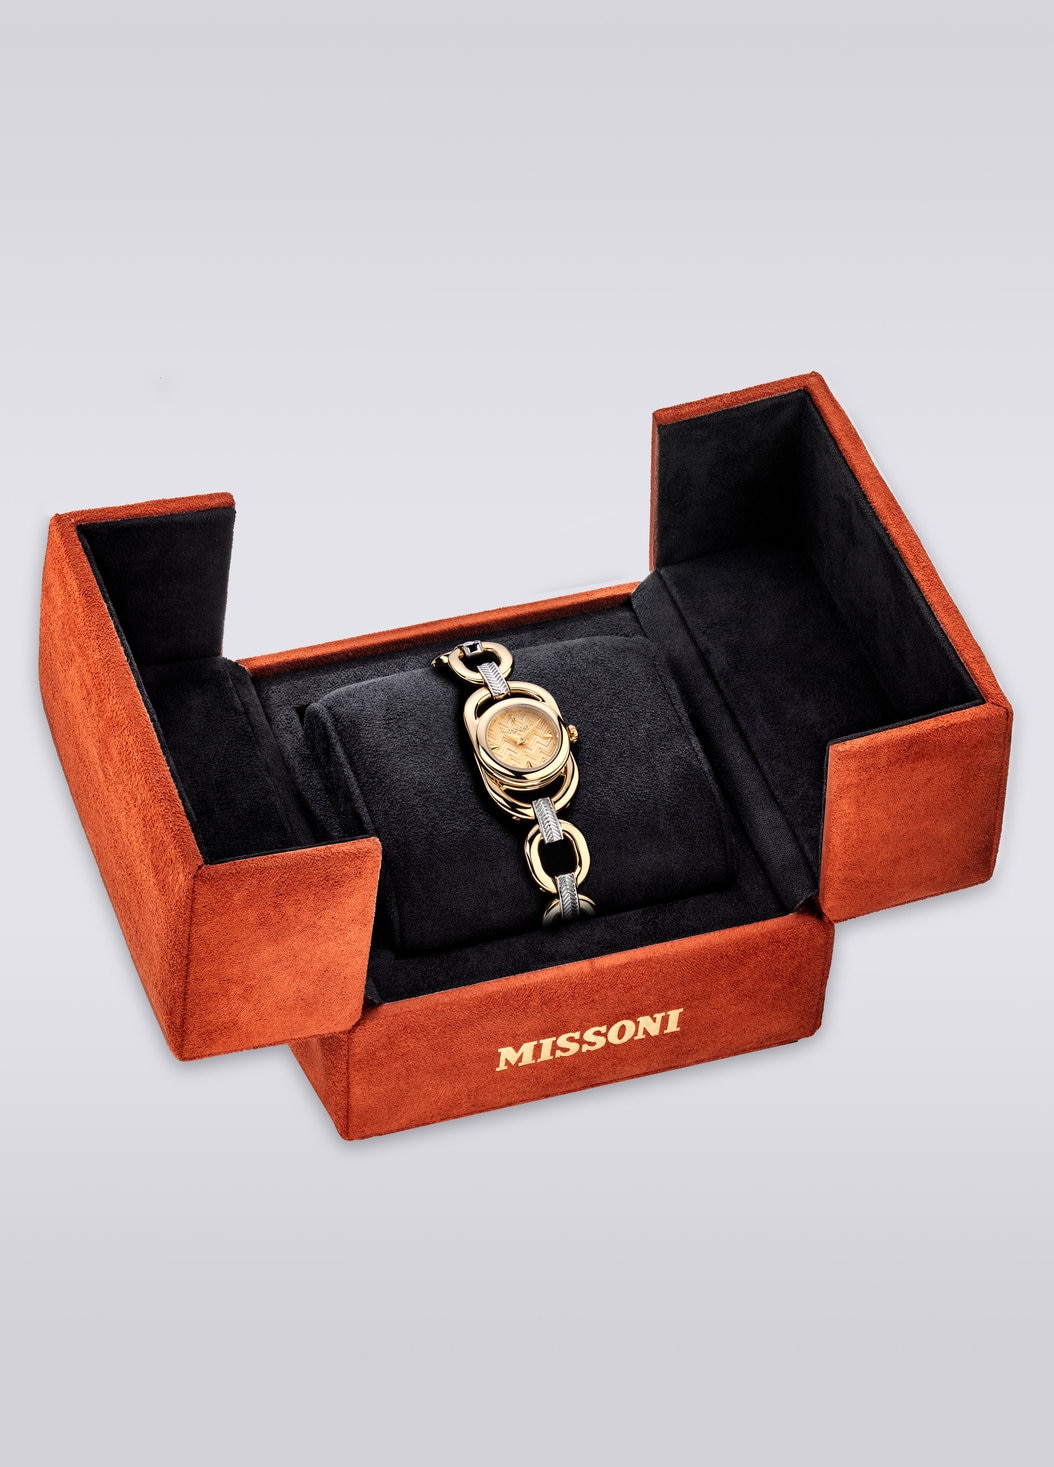 Missoni Gioiello Chain, Uhr mit 22,8 MM Gehäusegröße, Mehrfarbig  - 8053147046198 - 4